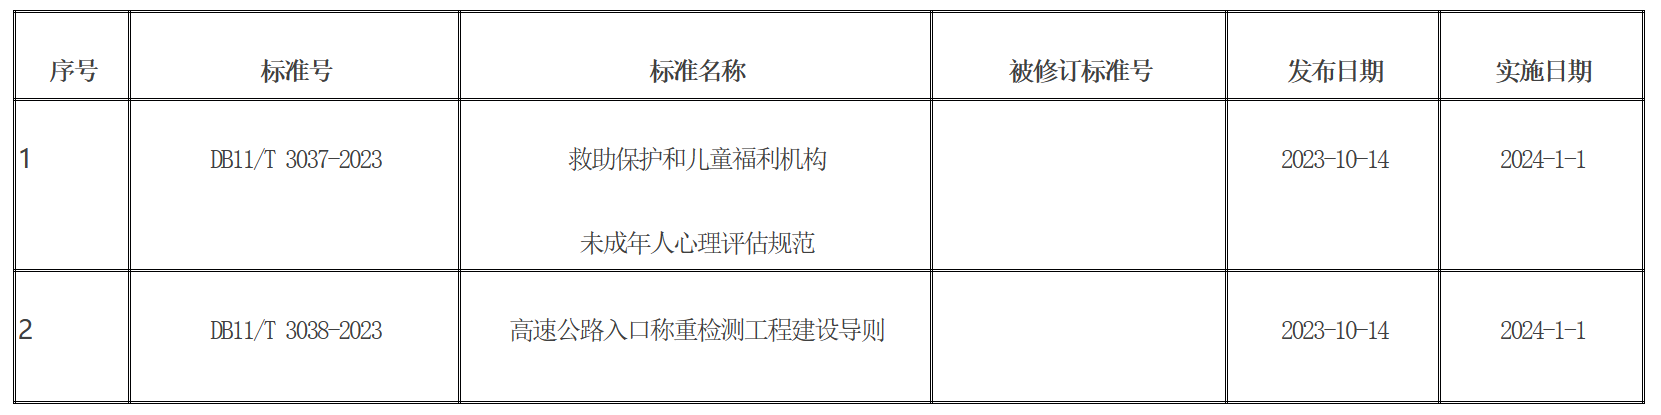 批准發佈的北京市地方標準目錄